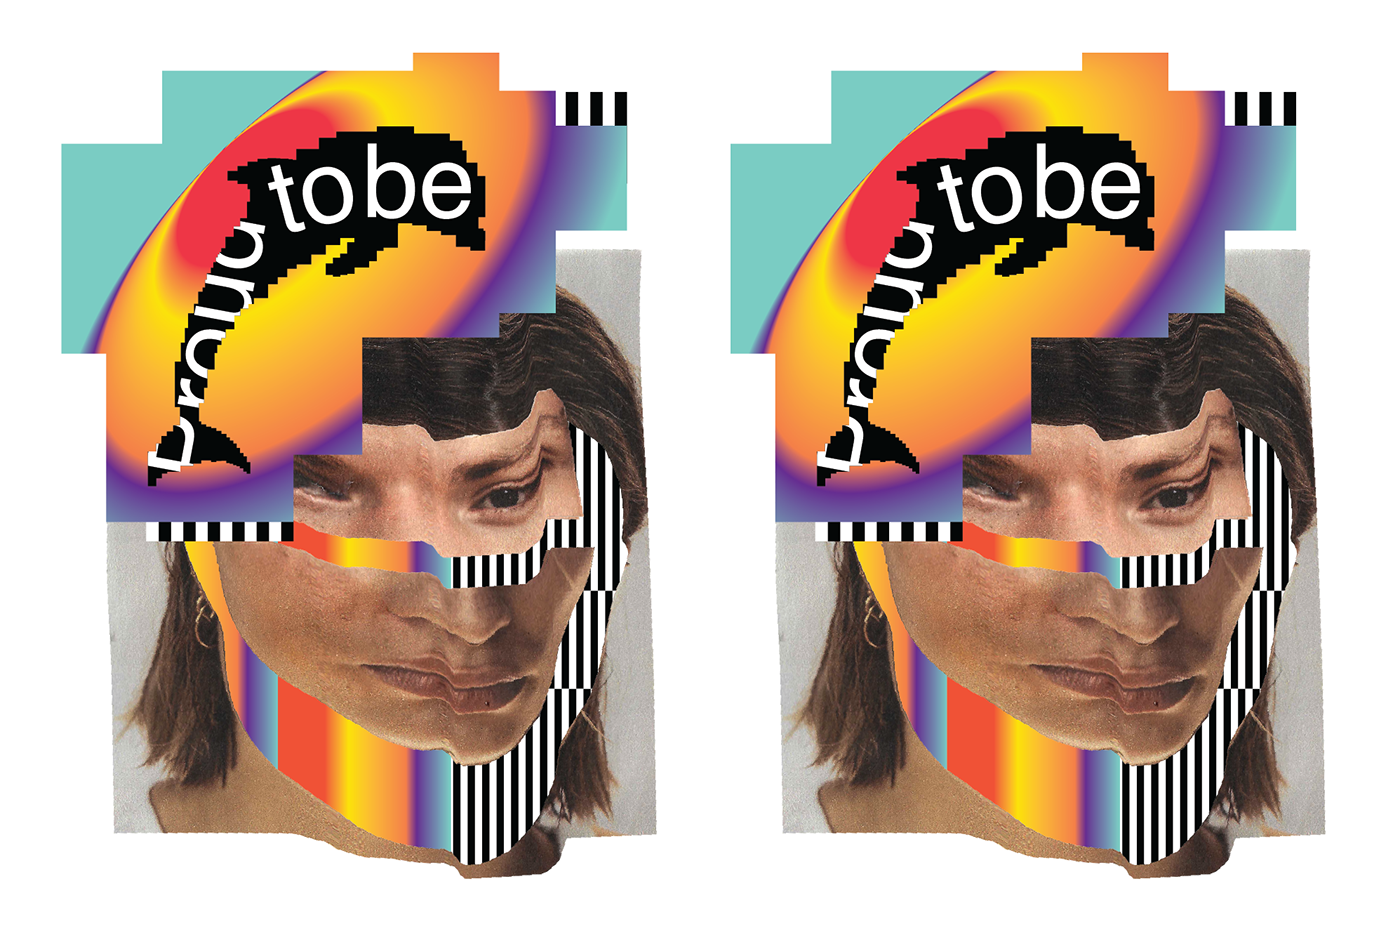 magazine illustartion PixelDesign LGBTQ pride pridemonth rainbow glitchdesign